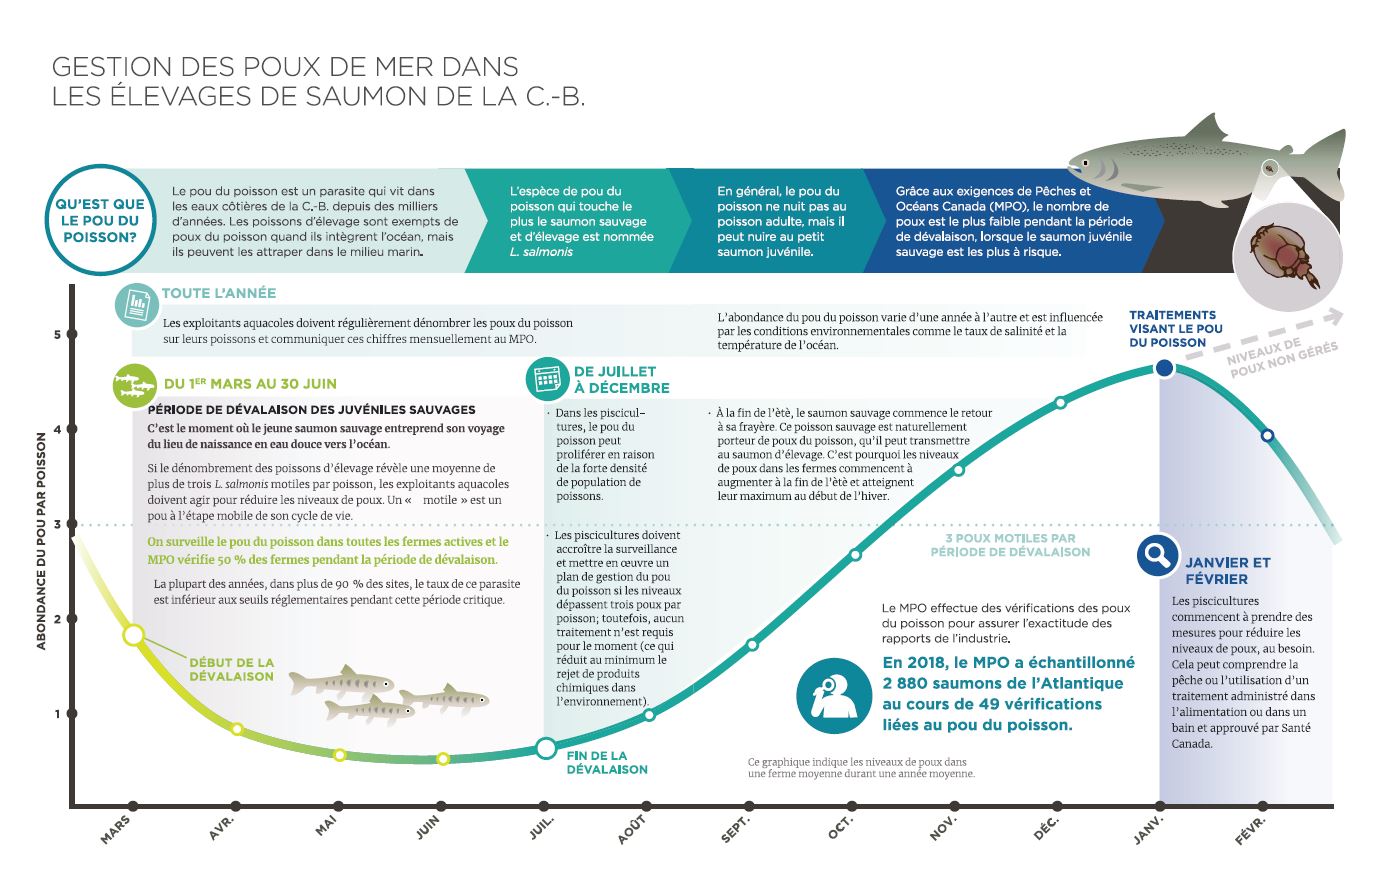 Infographie : Gestion du pou du poisson aux fermes salmonicoles de C.-B.